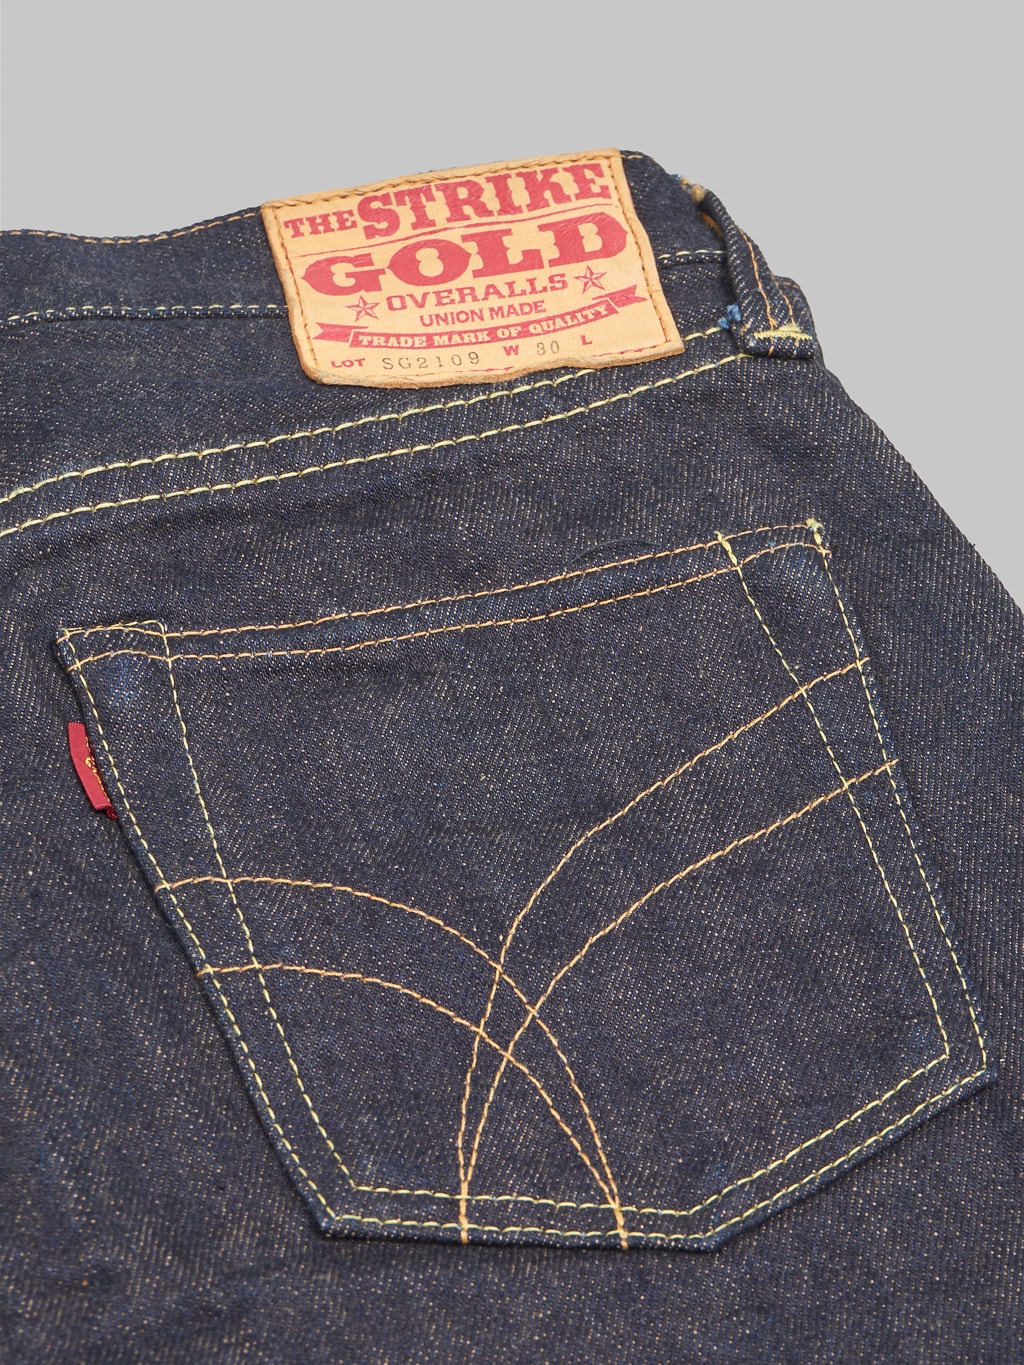 The Strike Gold Brown Weft Slim Tapered Jeans pocket design